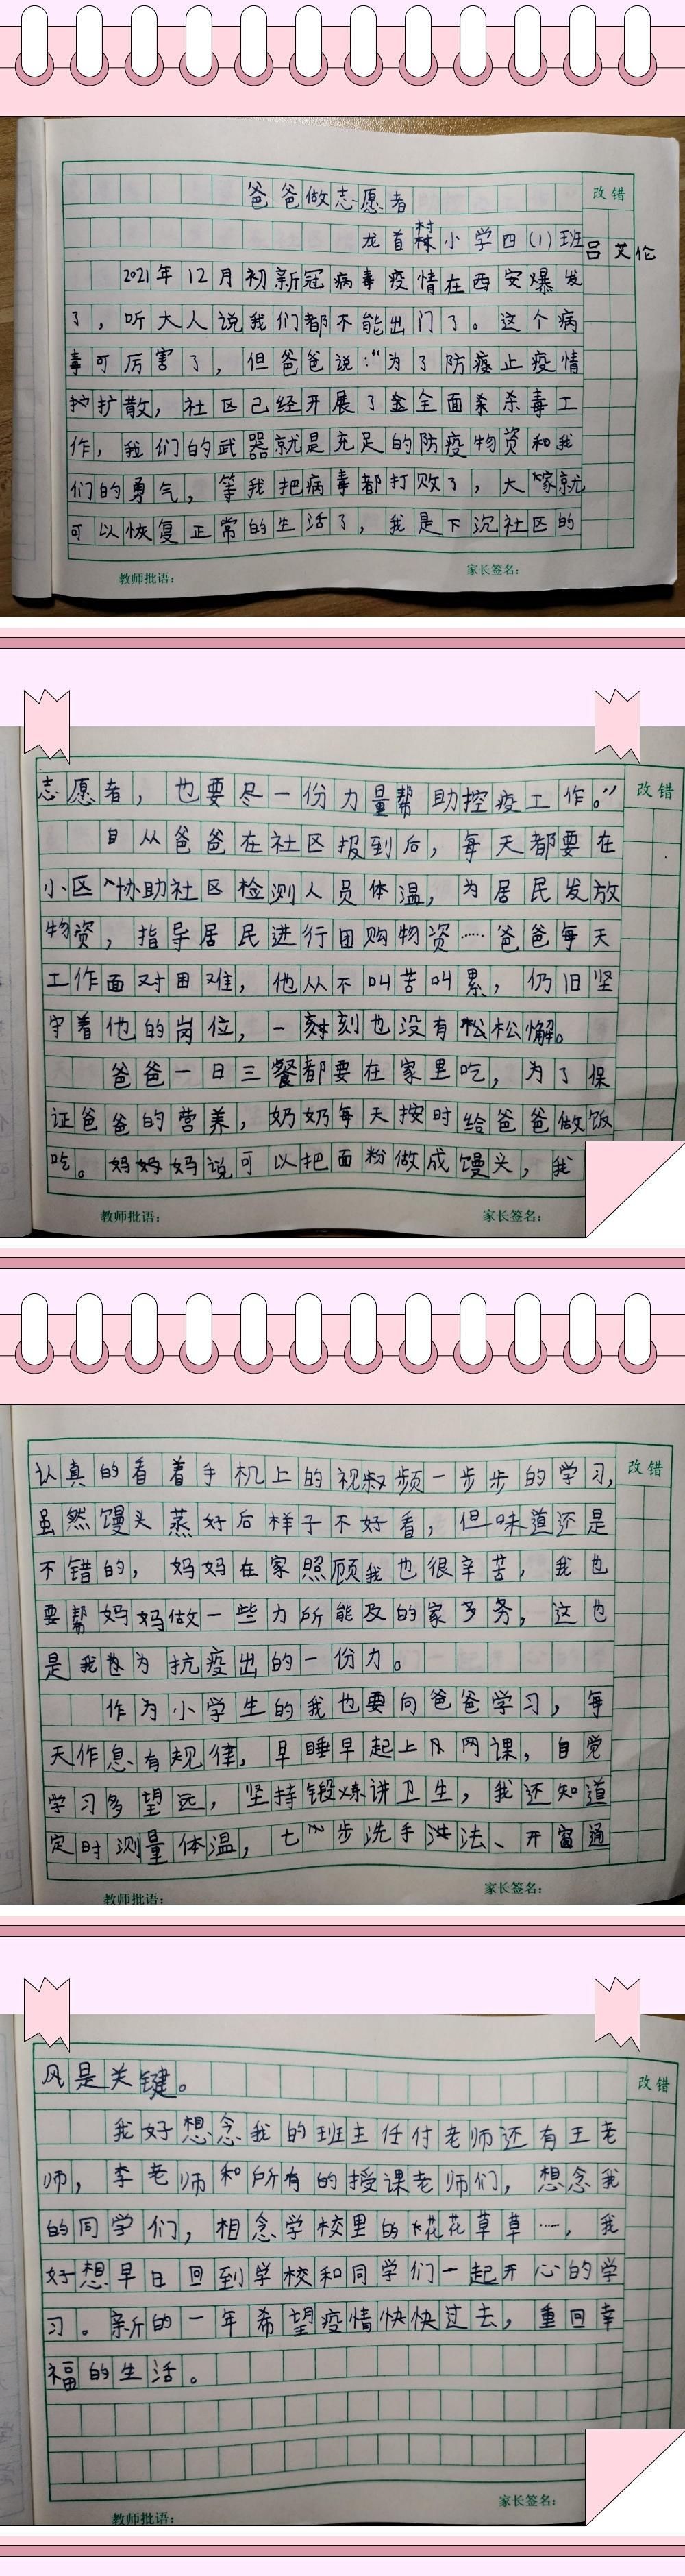 陕西省委组织部|10岁儿子的日记:＂爸爸做志愿者,我要向他学习＂